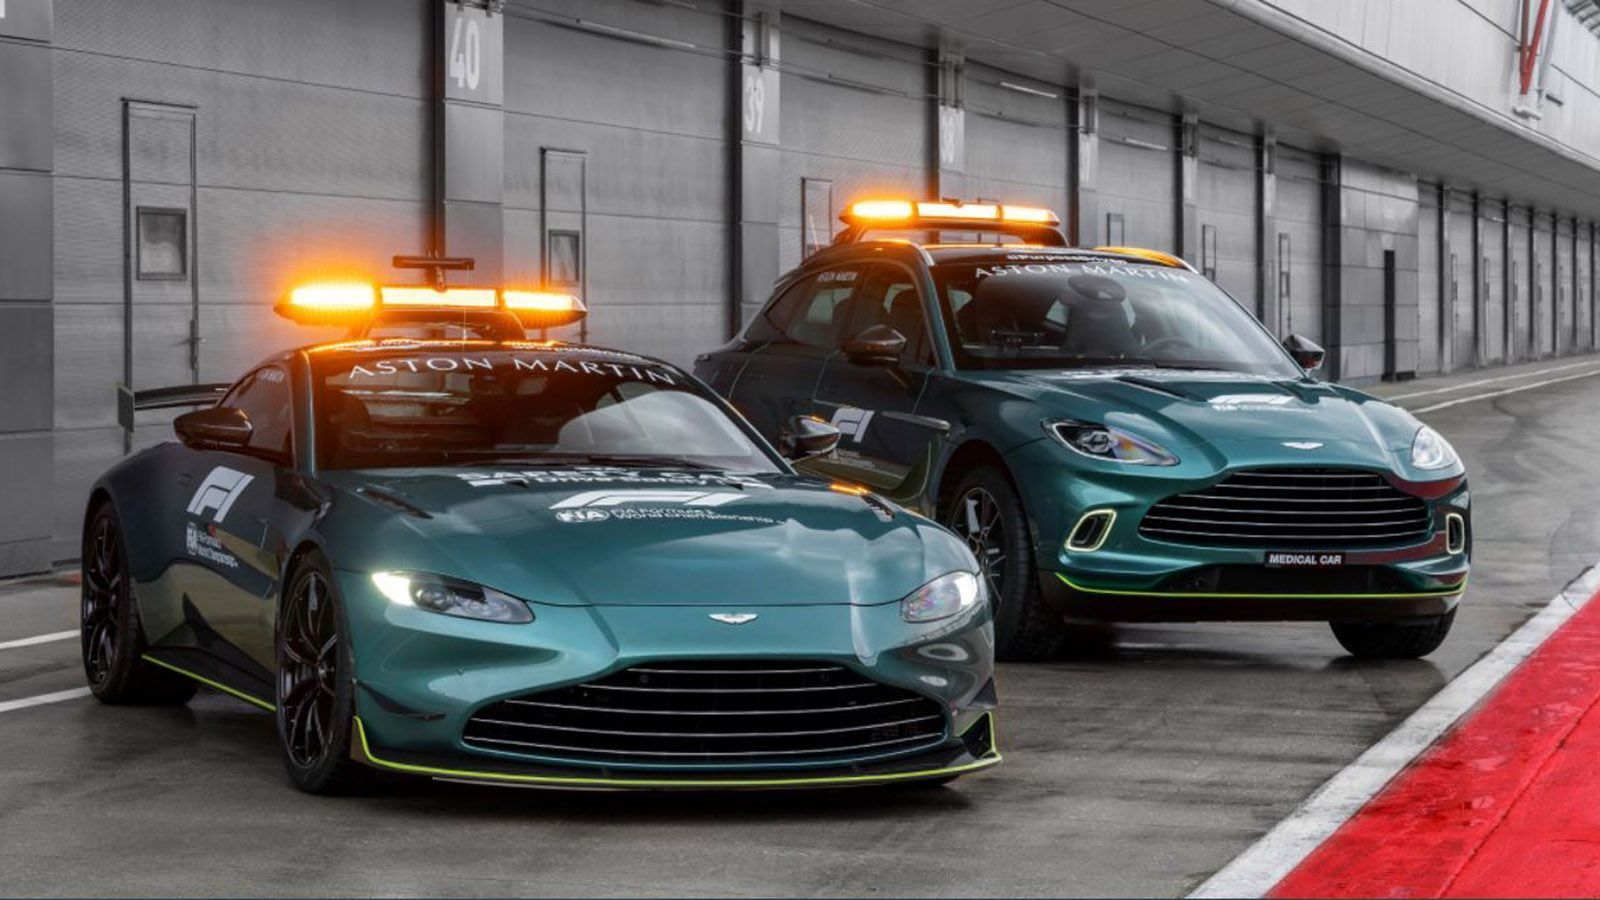 
                <strong>Safety Car Aston Martin</strong><br>
                Im Wechsel mit Mercedes stellt auch der britische Hersteller Aston Martin ein Safety Car und ein Medical Car. Diese sind im traditionellen Grün der Marke gehalten.
              